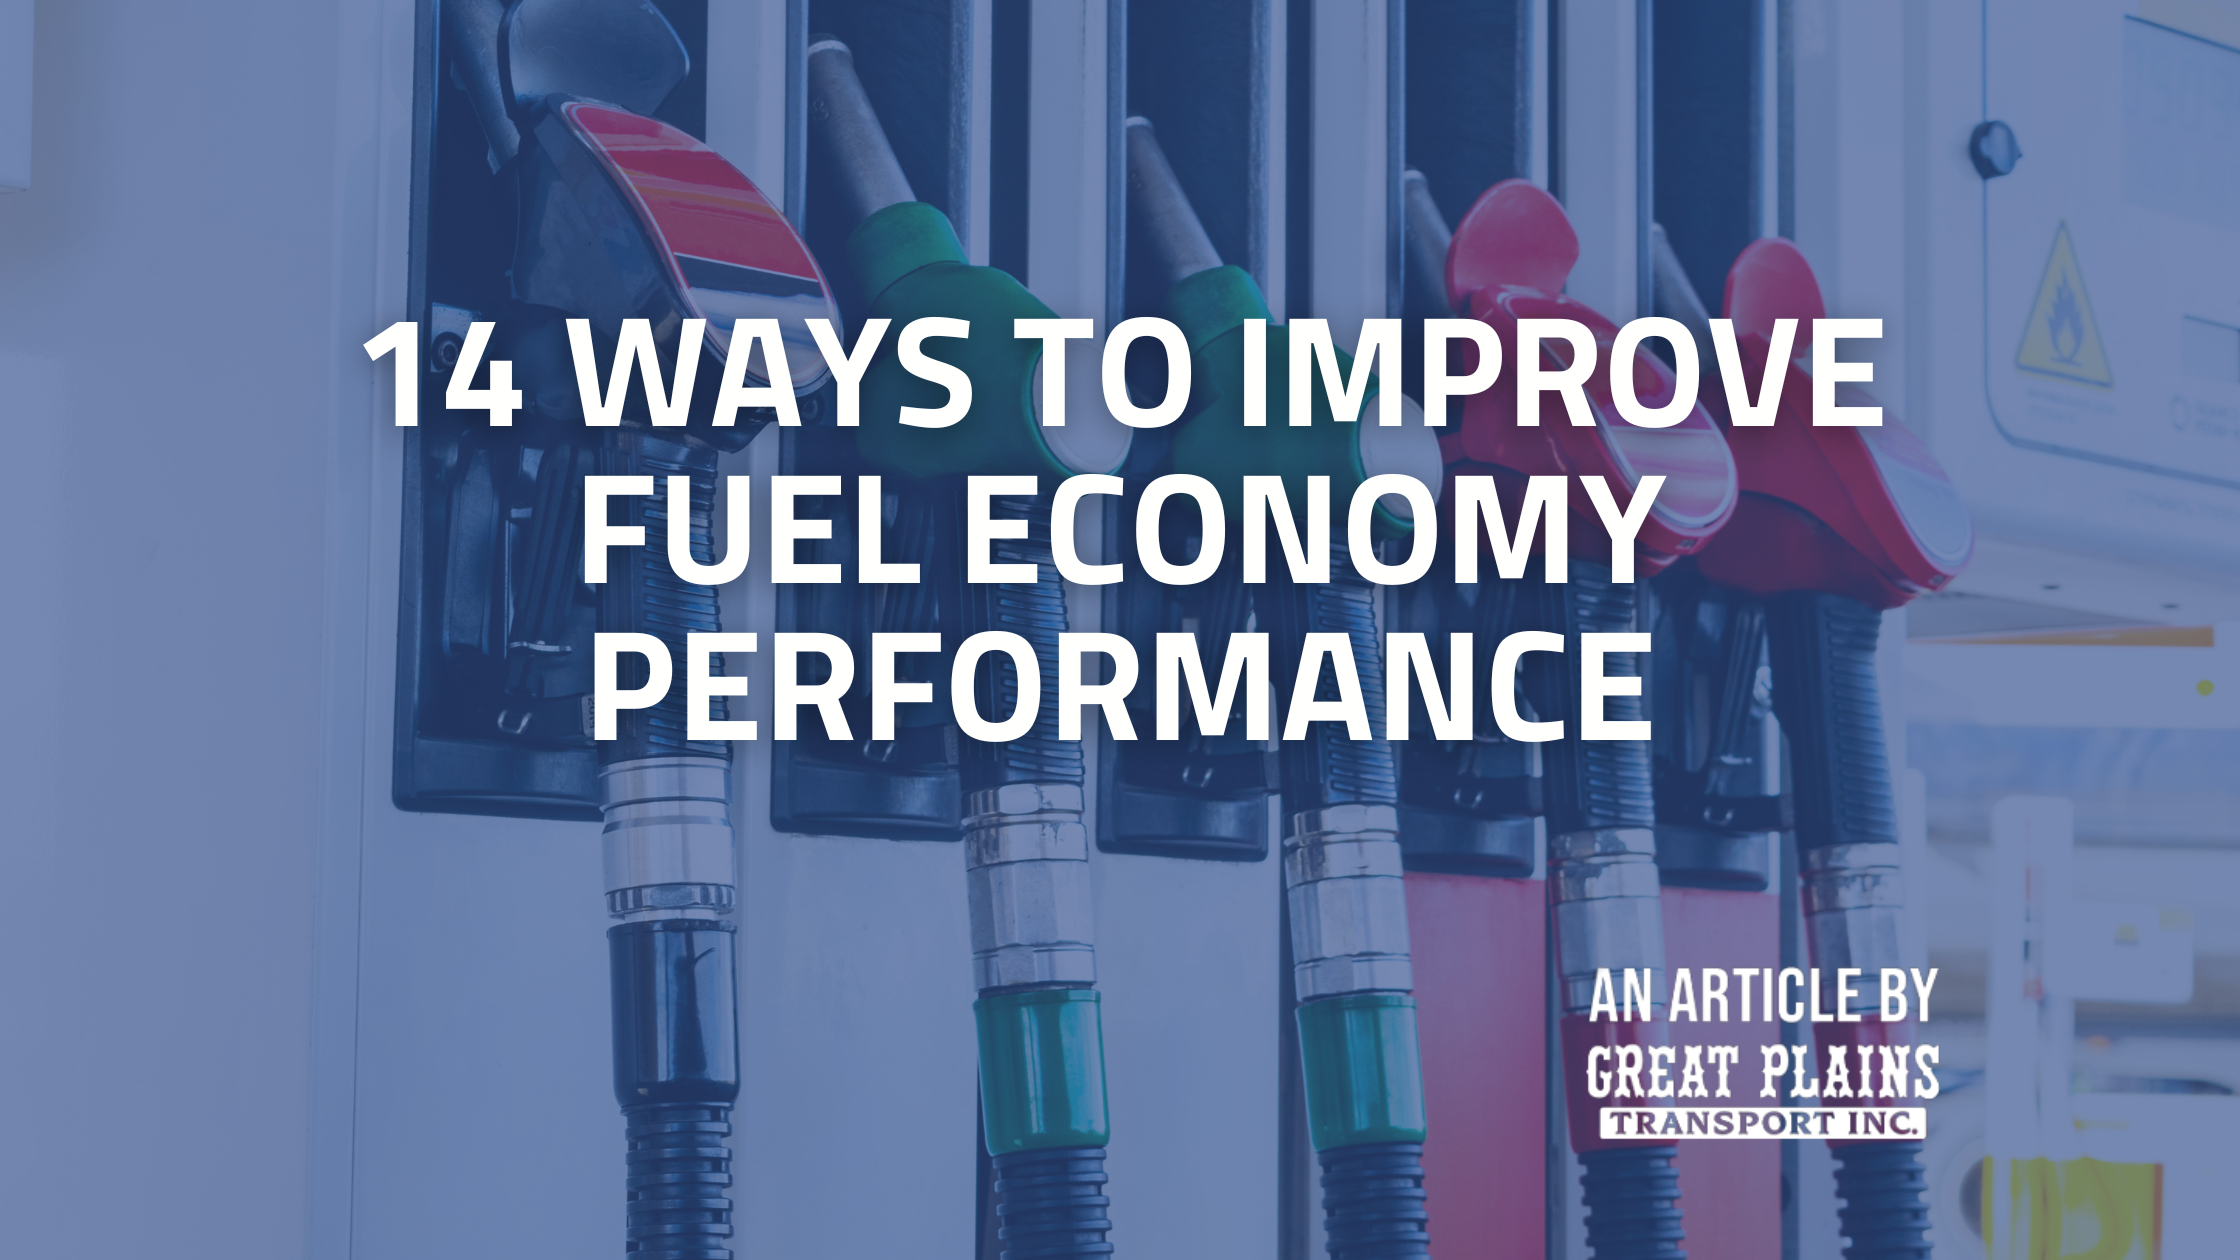 14 ways to improve fuel economy performance